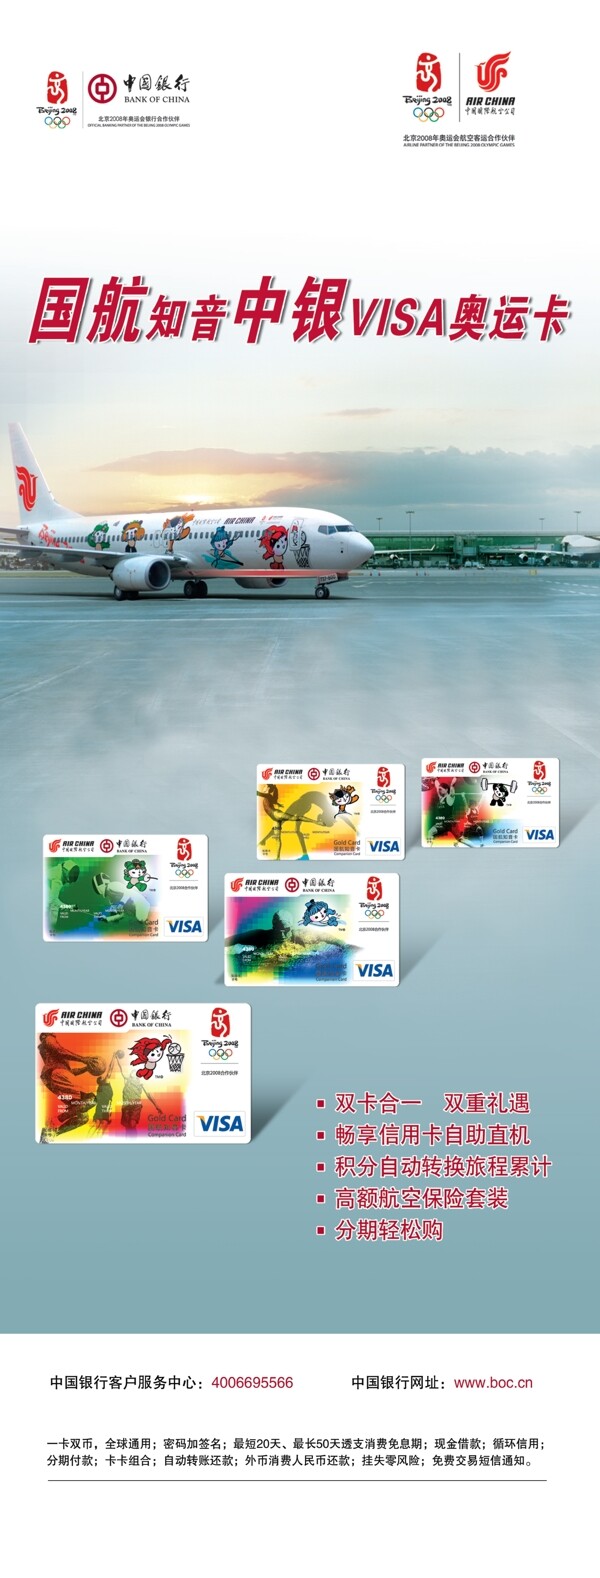 中国银行国航知音卡图片